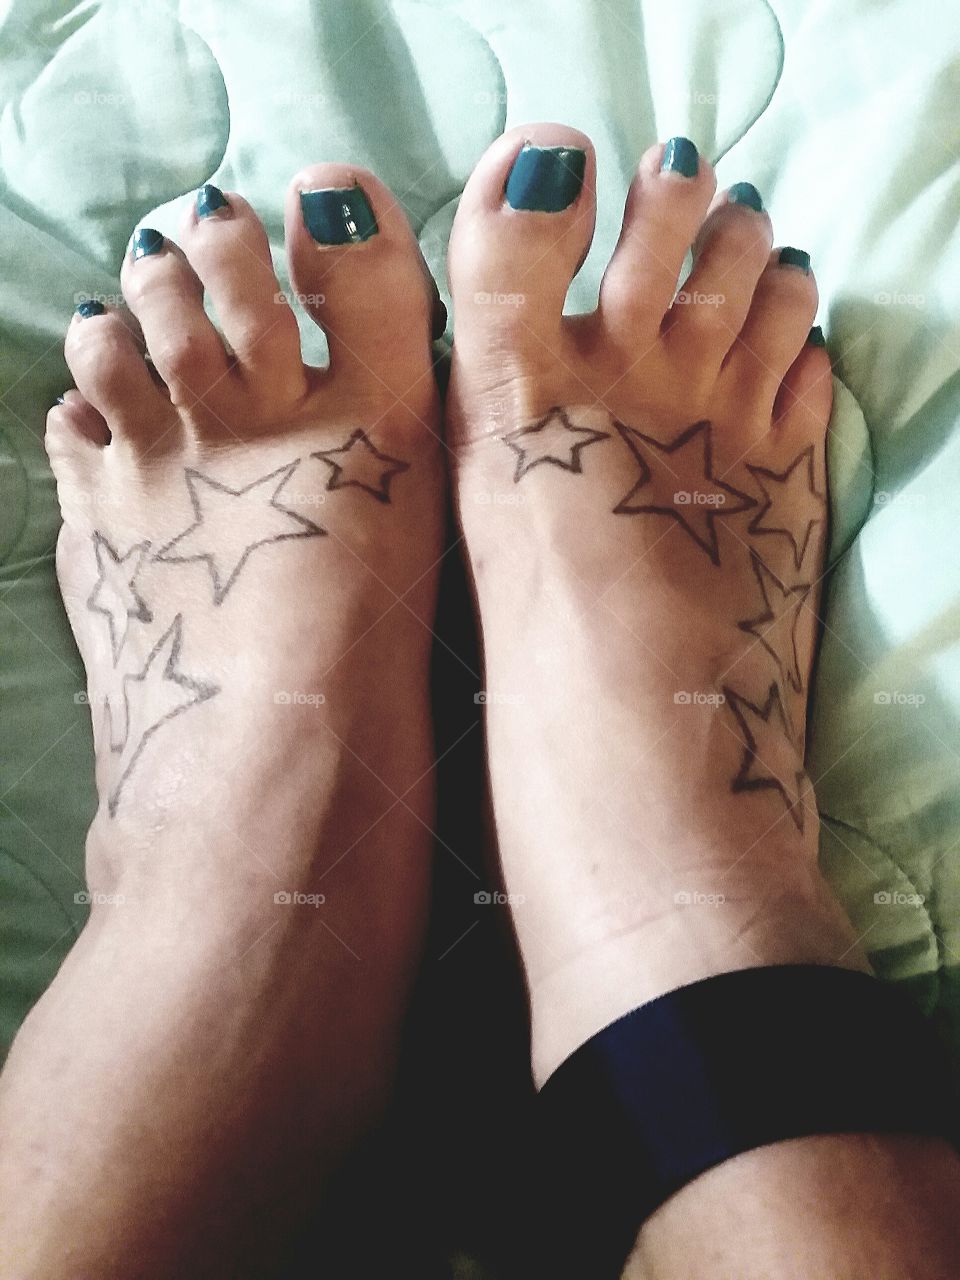 Beautiful tattooed feet